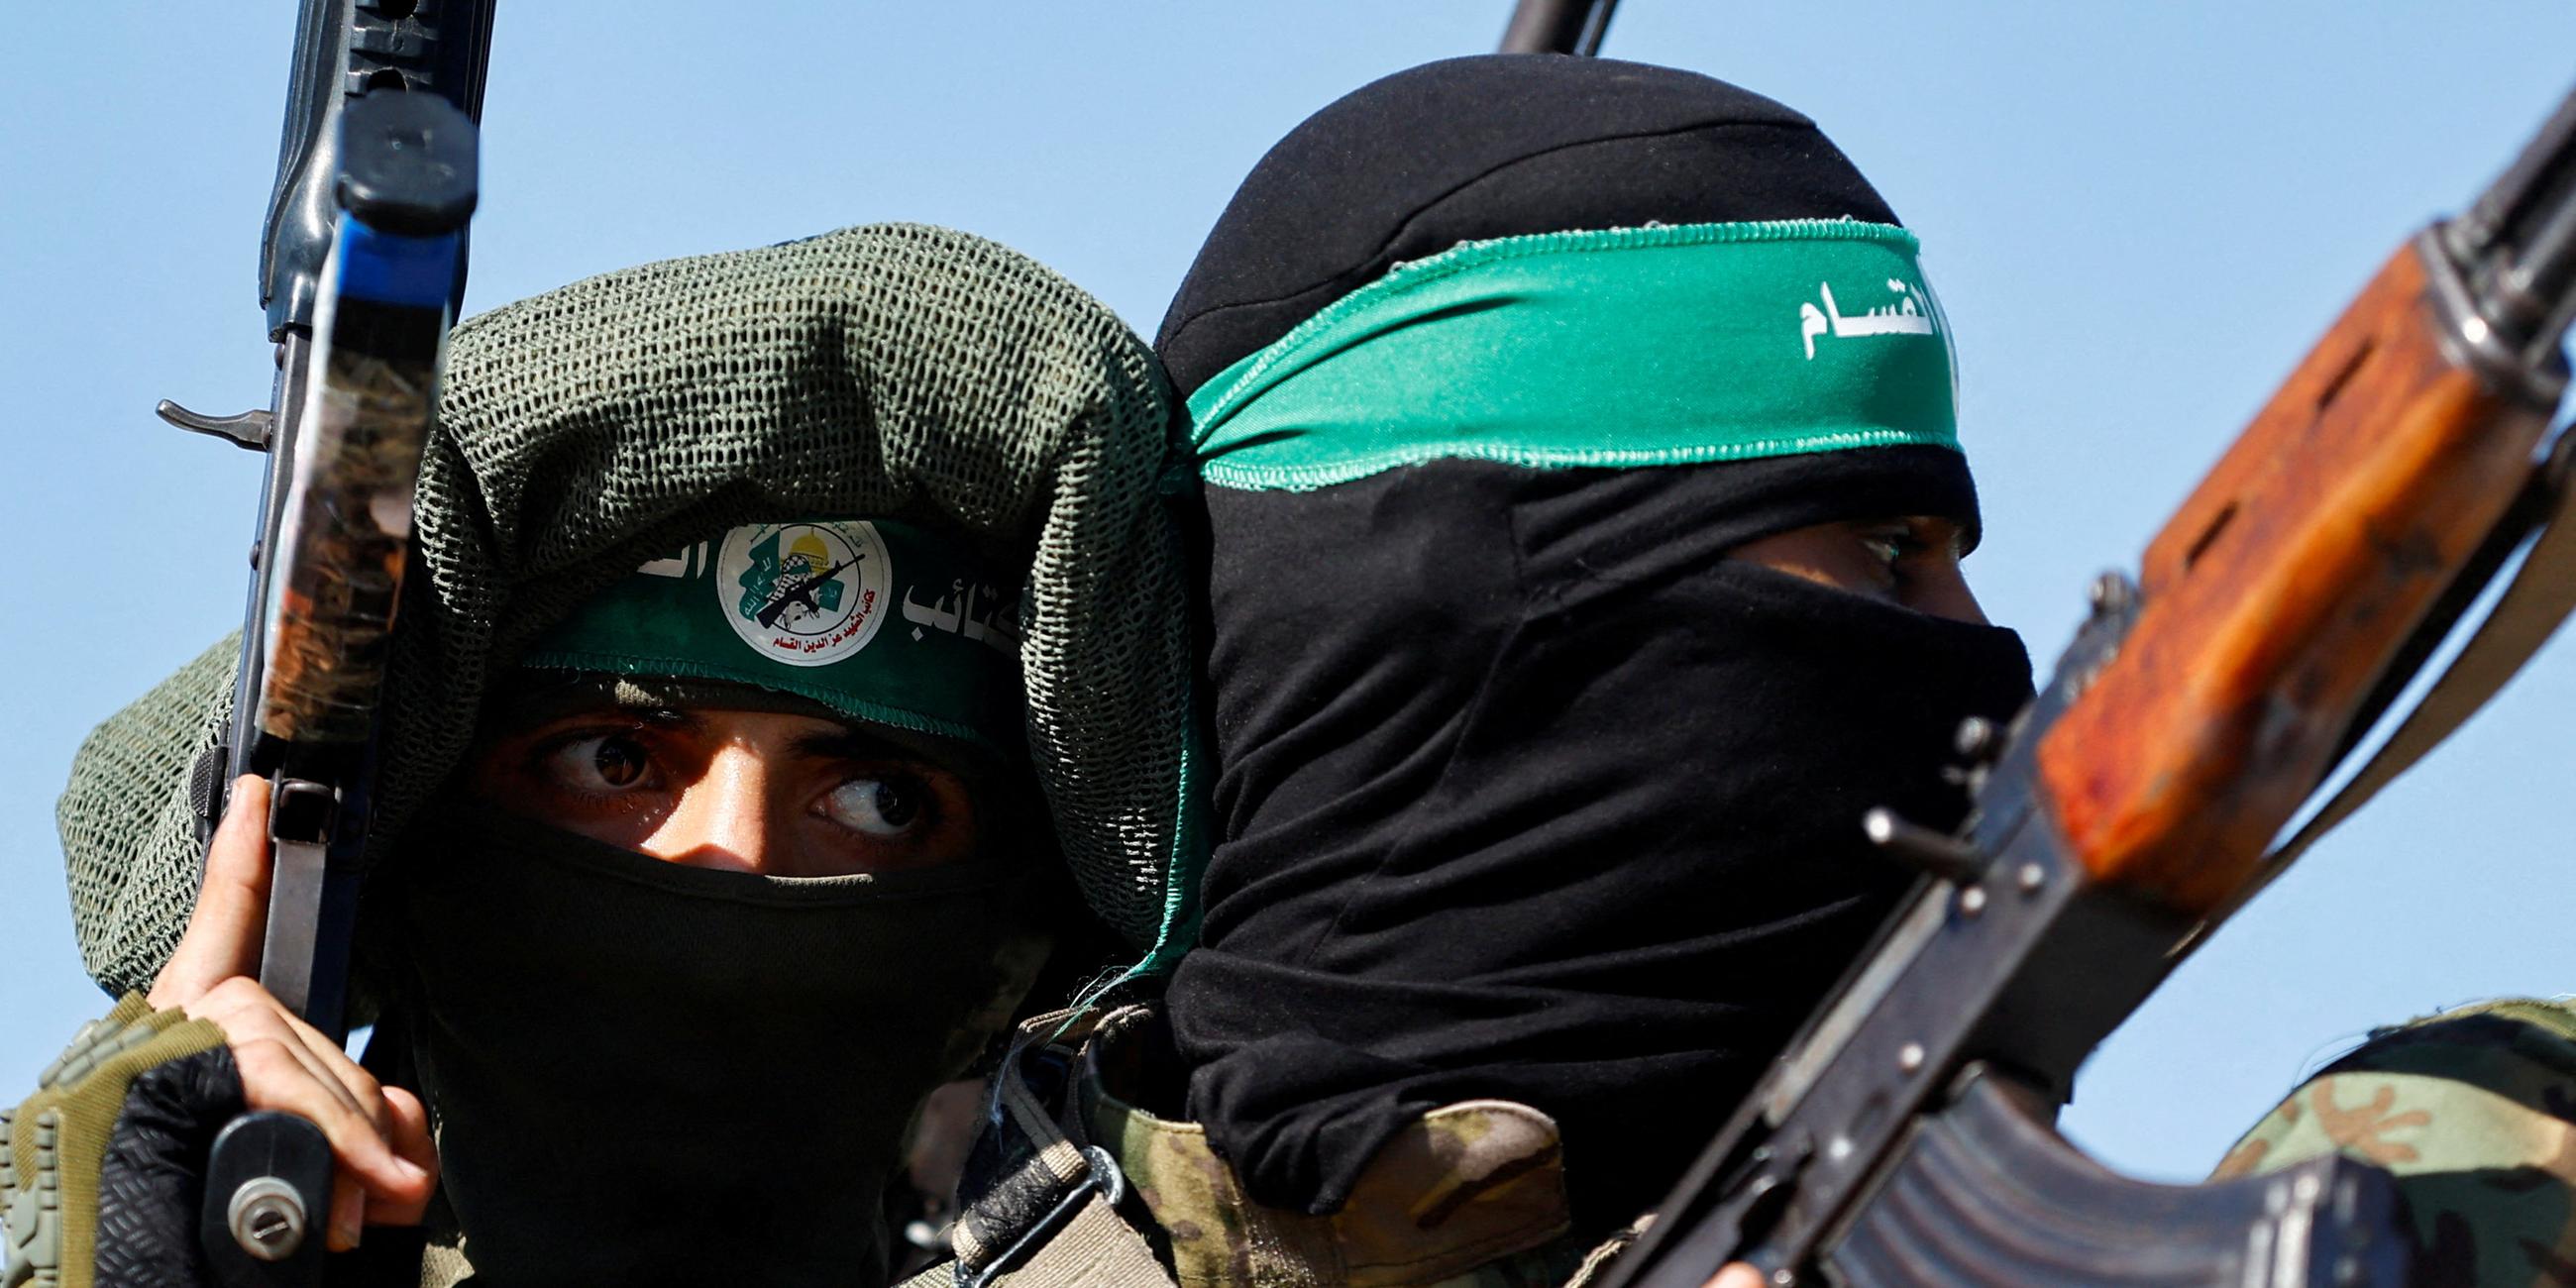 Archiv: Der bewaffnete Flügel der Hamas bei einer Militärparade in Gaza